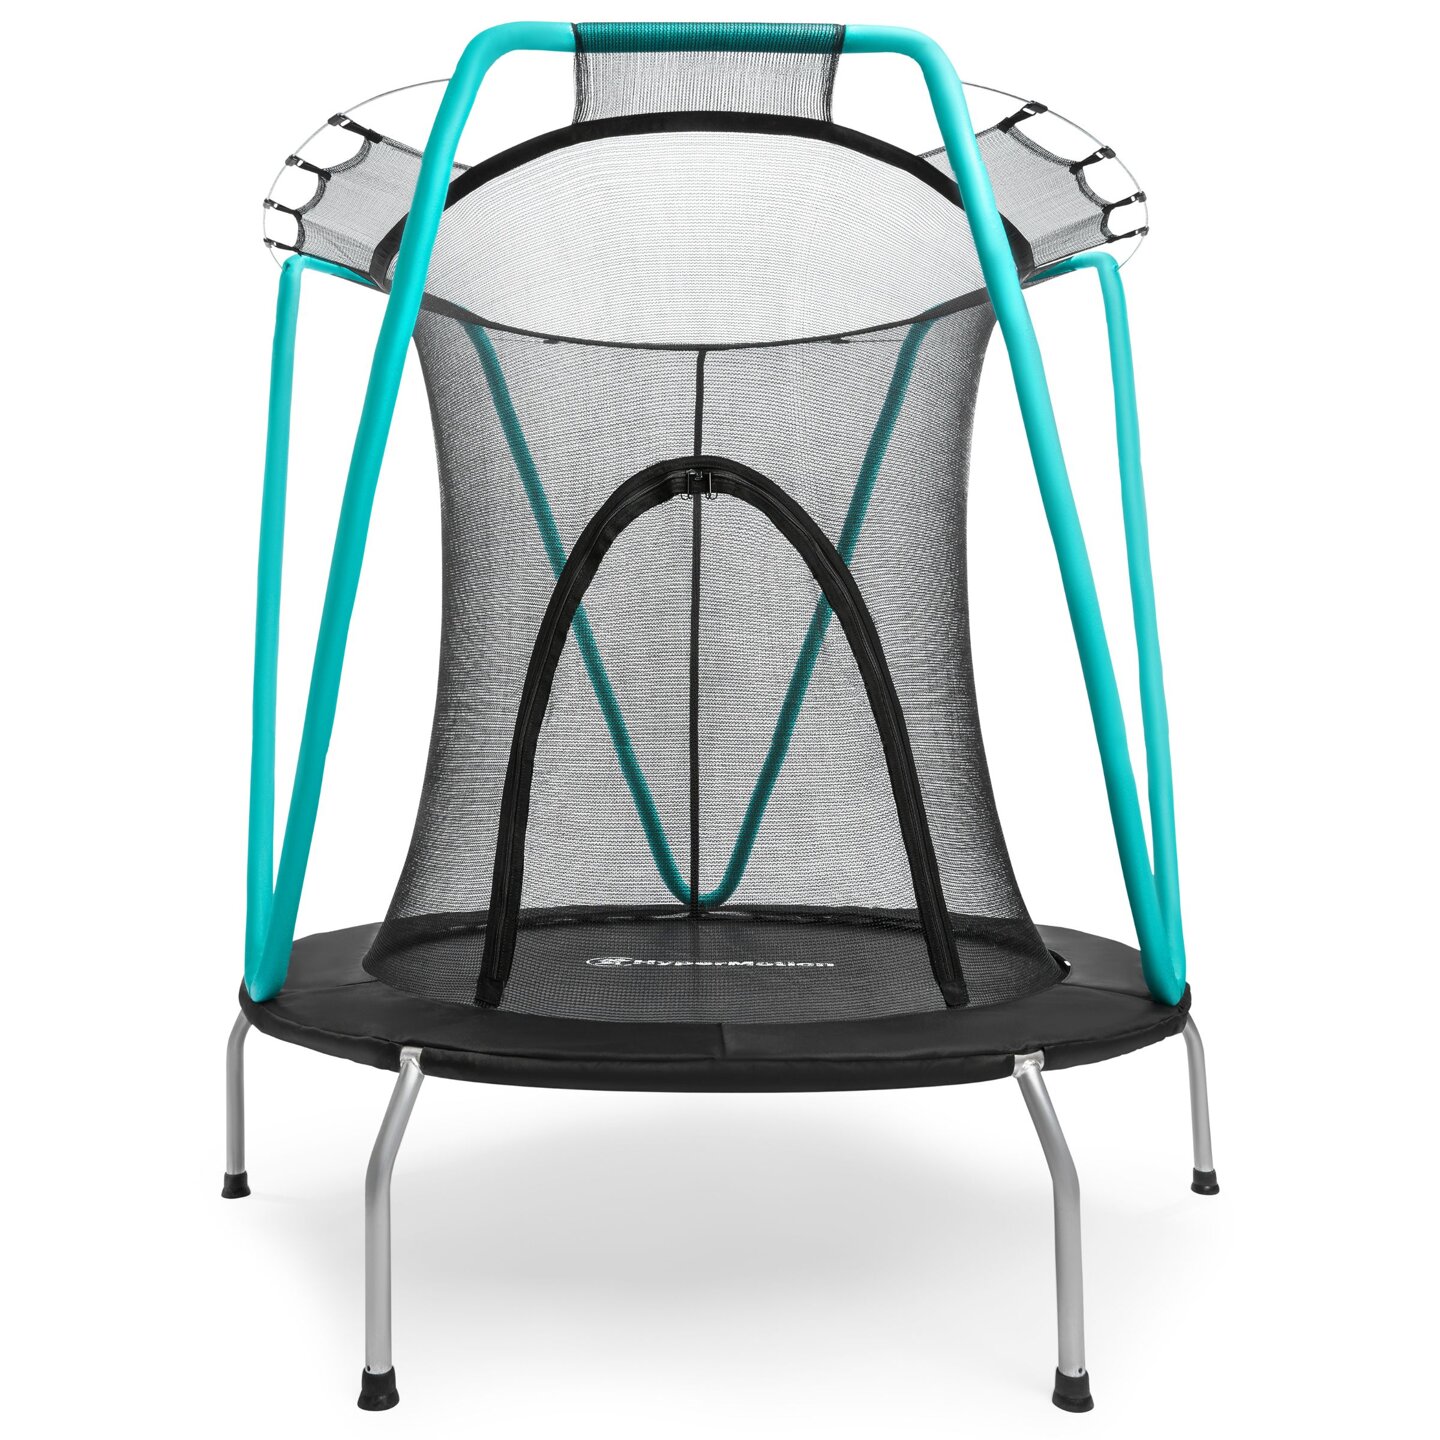 Mint trampolin 137cm med beskyttelsesnet - til børn 3-8 år - til hjem og have